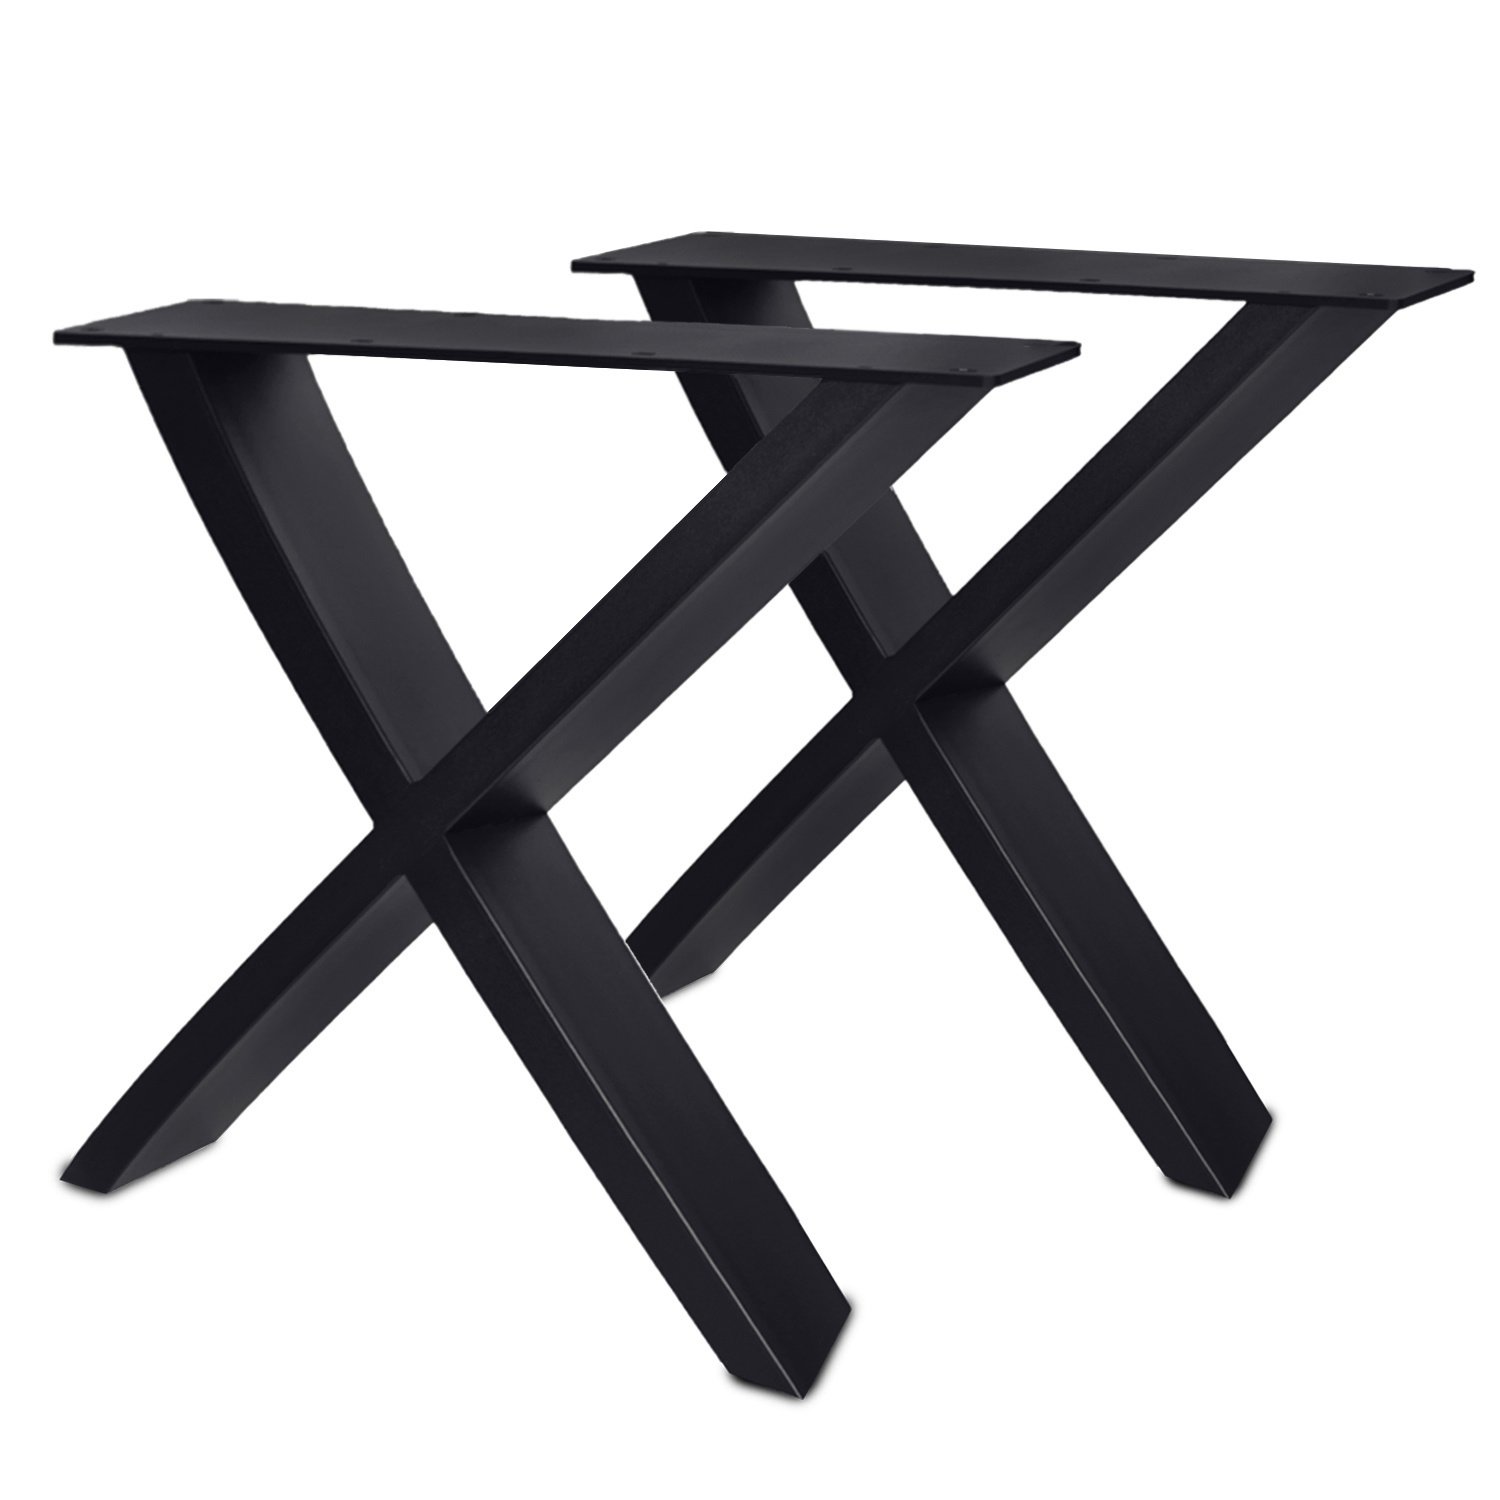  Stalen X-tafelpoten SCHUIN (SET) 5x15 cm - 84 cm breed - 72 cm hoog - Kruispoot met zwarte poedercoating